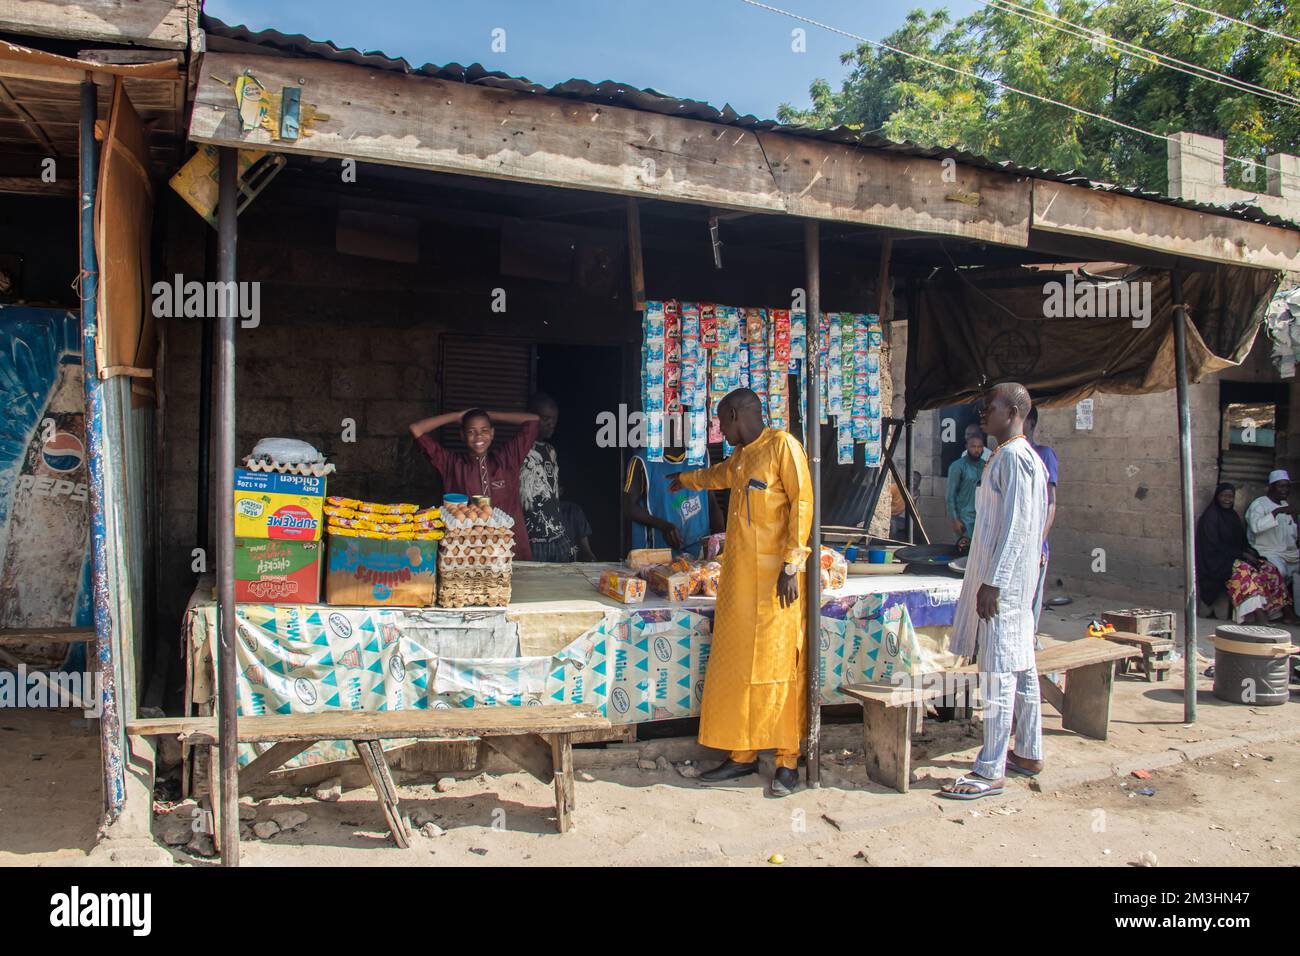 Mercato aperto africano in strade trafficate e venditori di strada, con persone affollate e traffico pubblico, piccoli negozi che vendono merci diverse Foto Stock